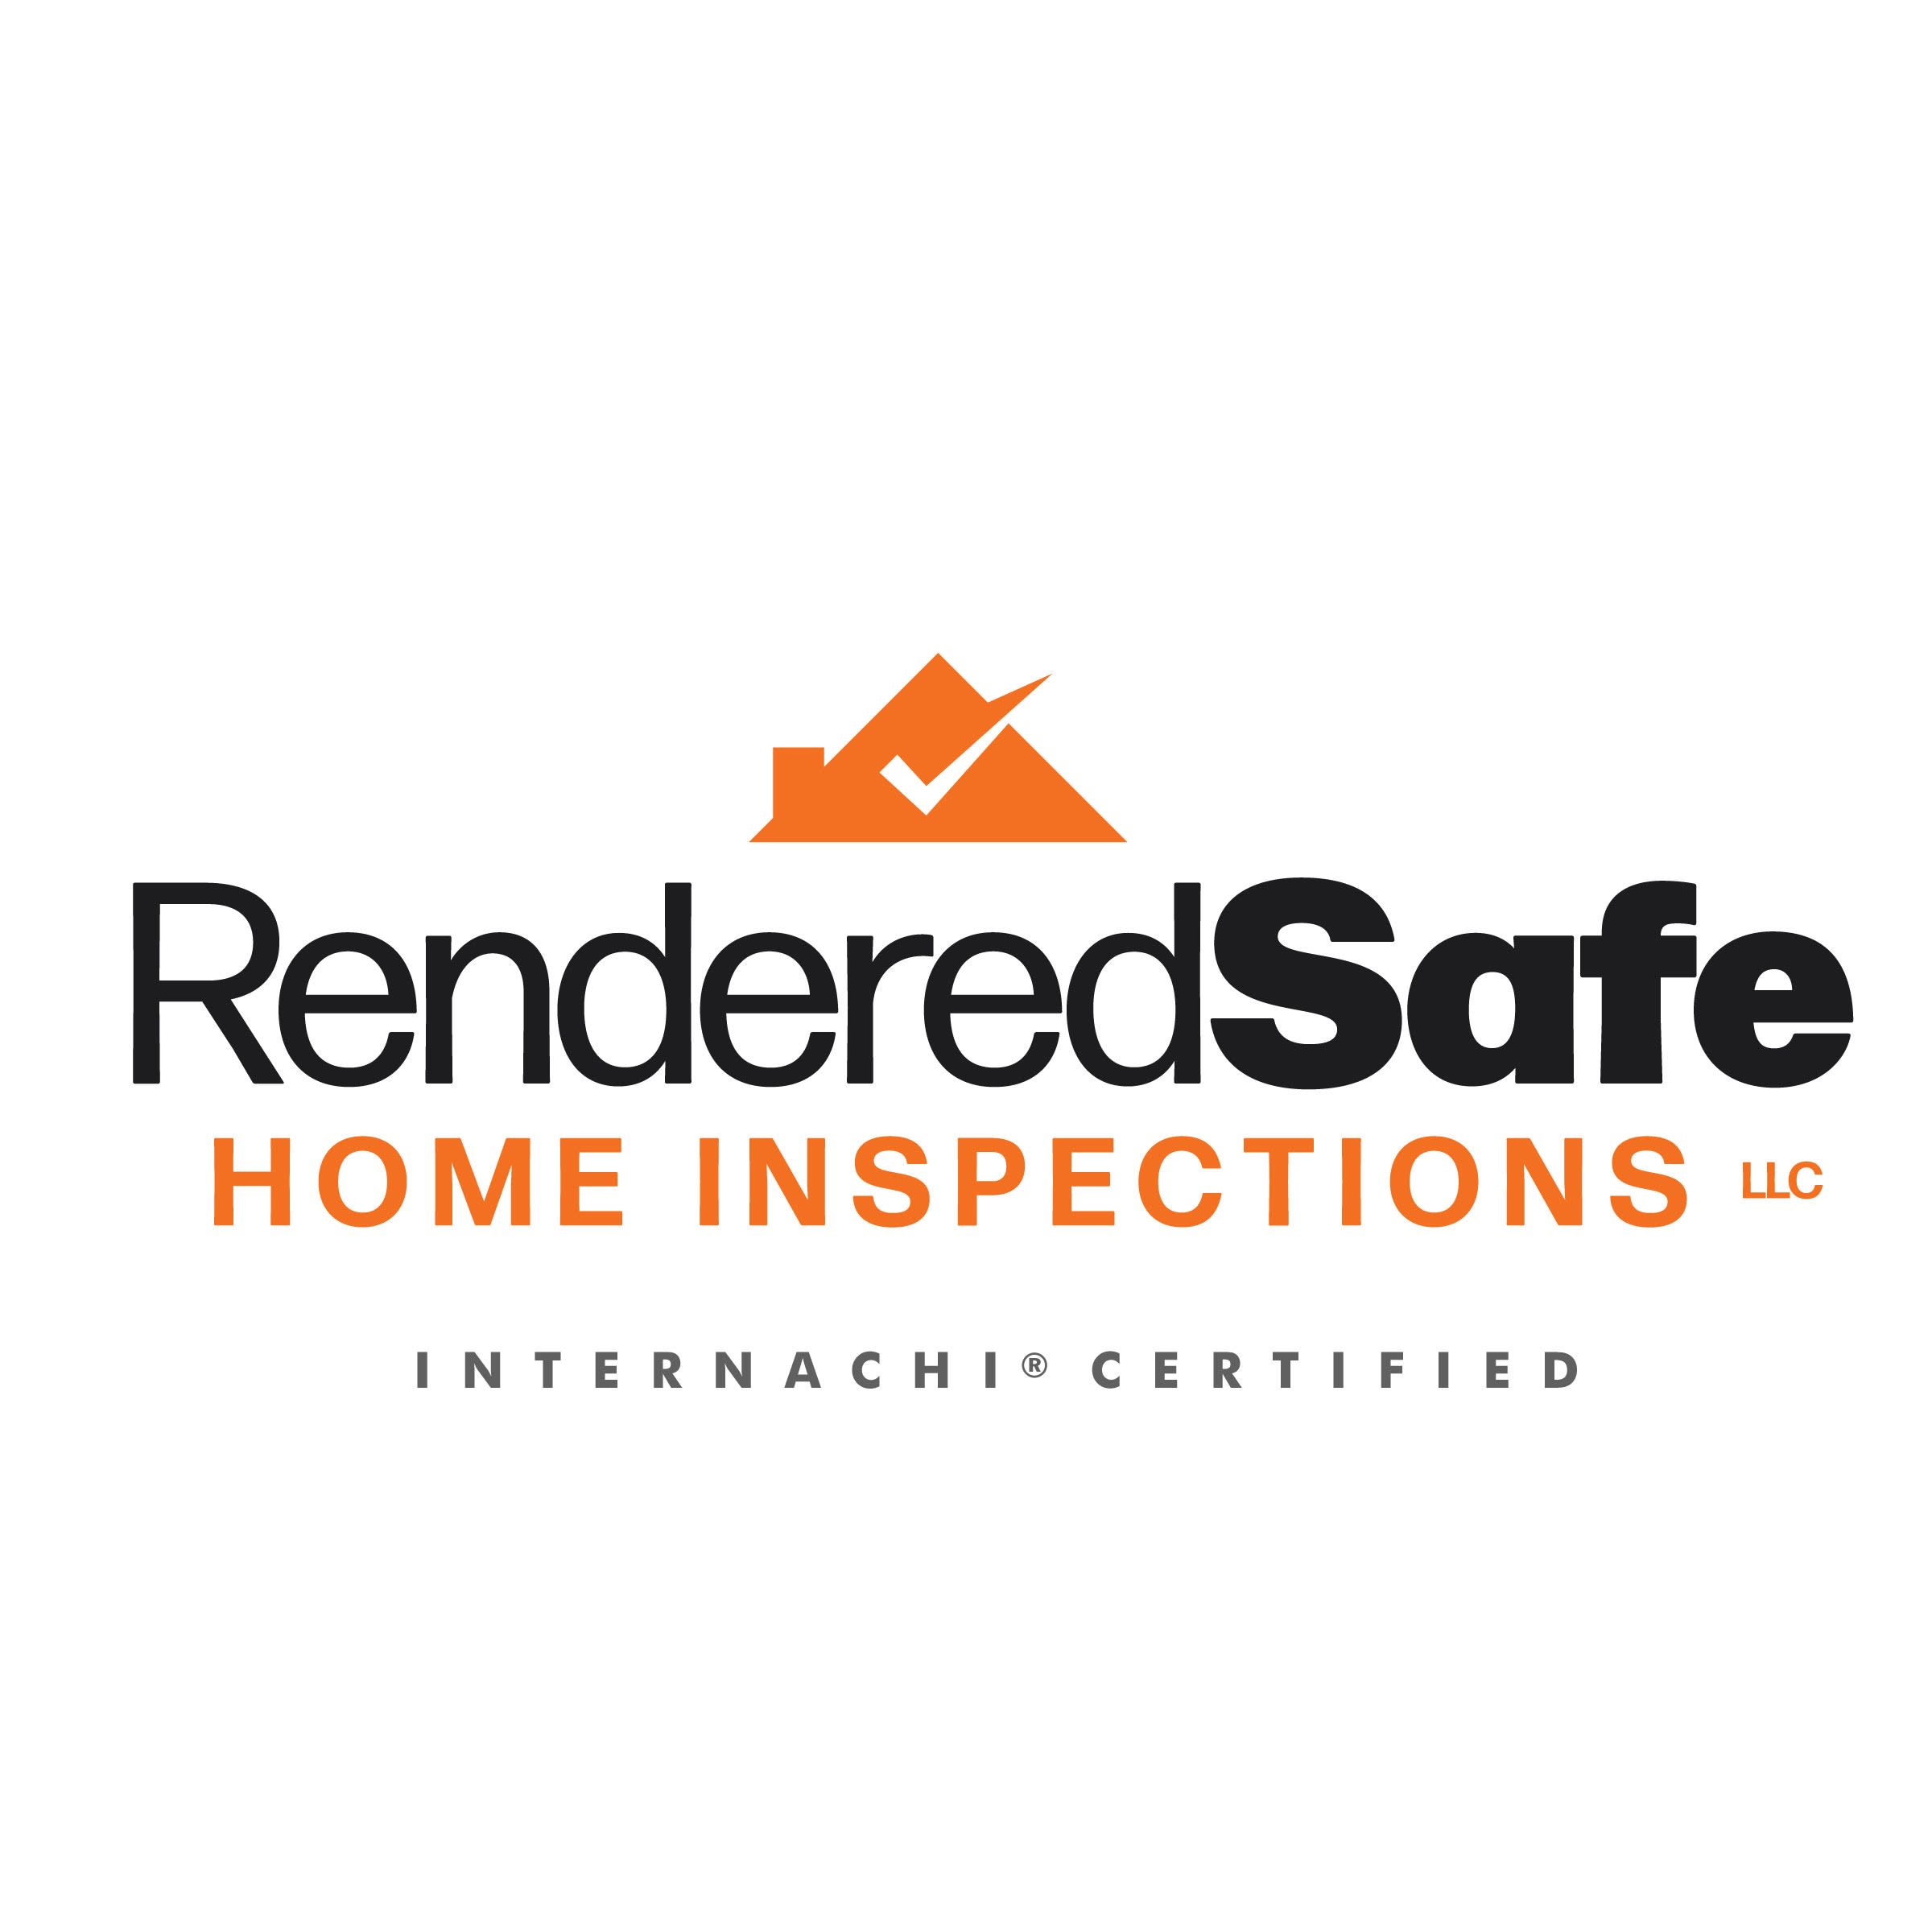 Rendered Safe Home Inspections, LLC Logo